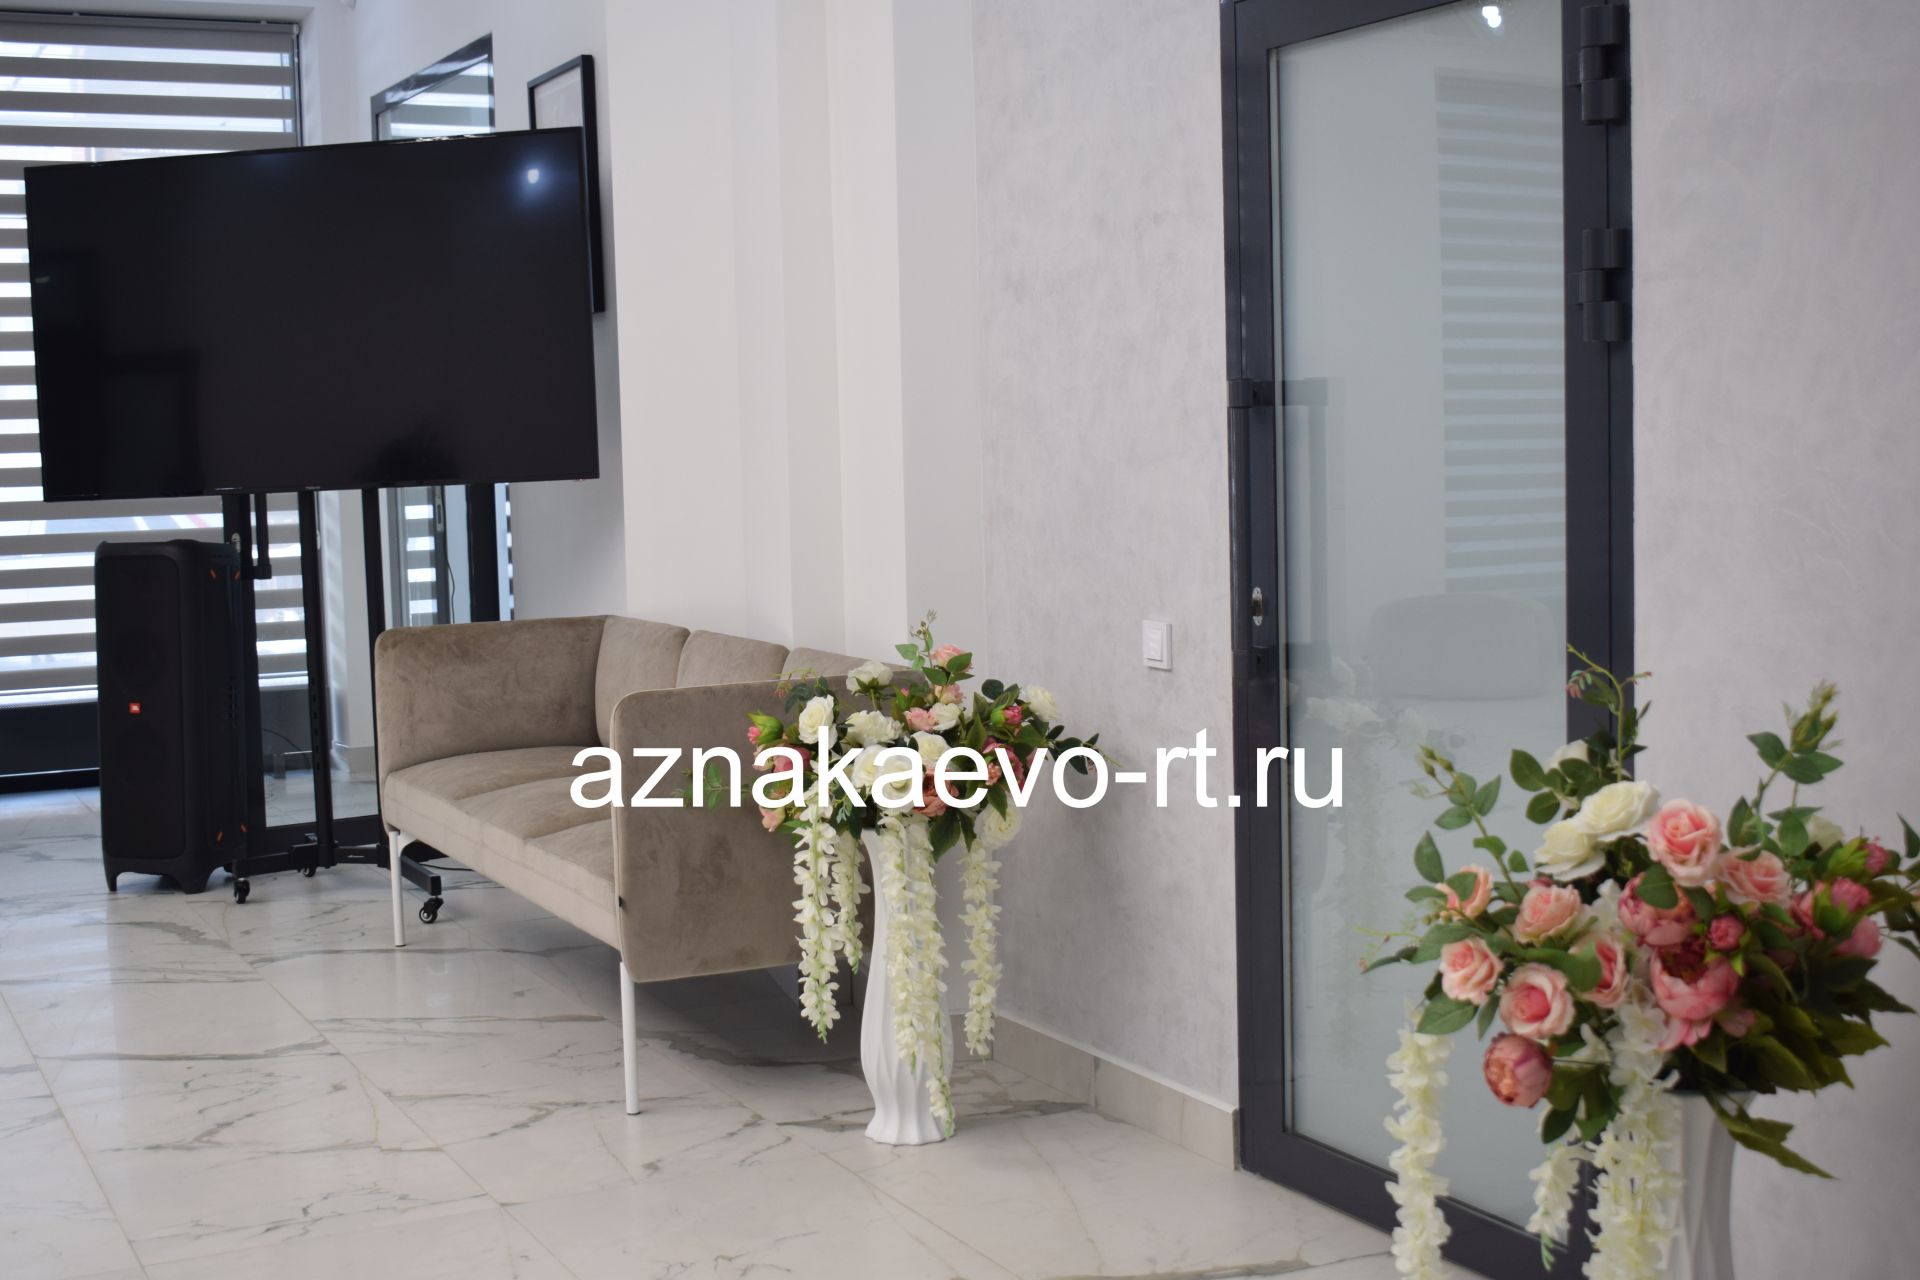 В Азнакаево открылось новое здание ЗАГС